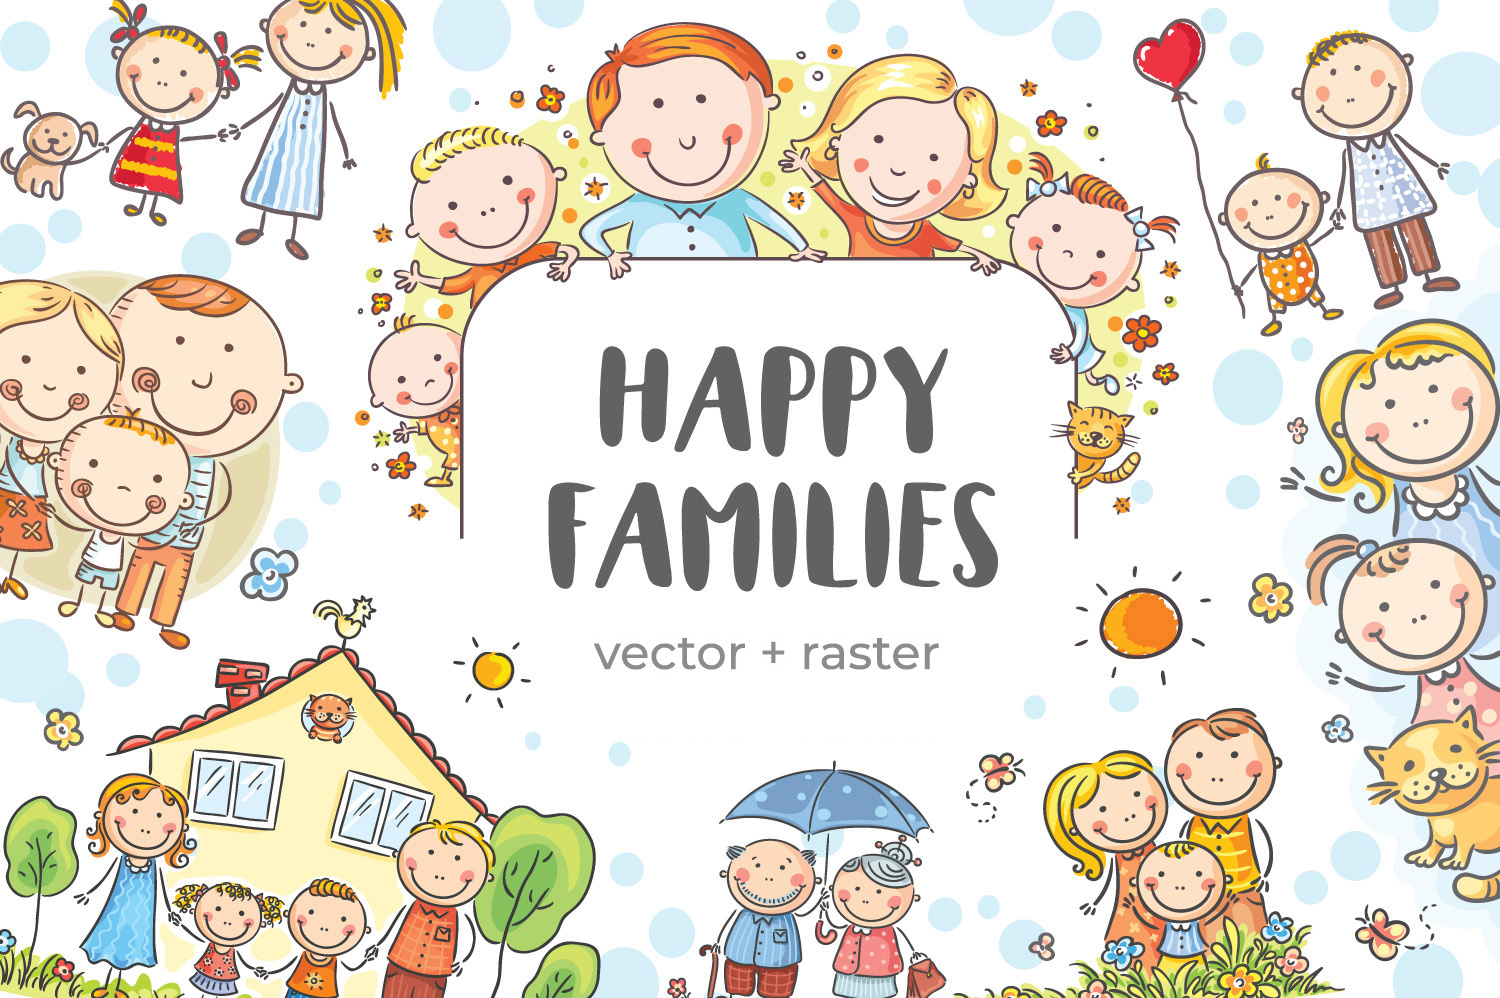 Happy families bundle